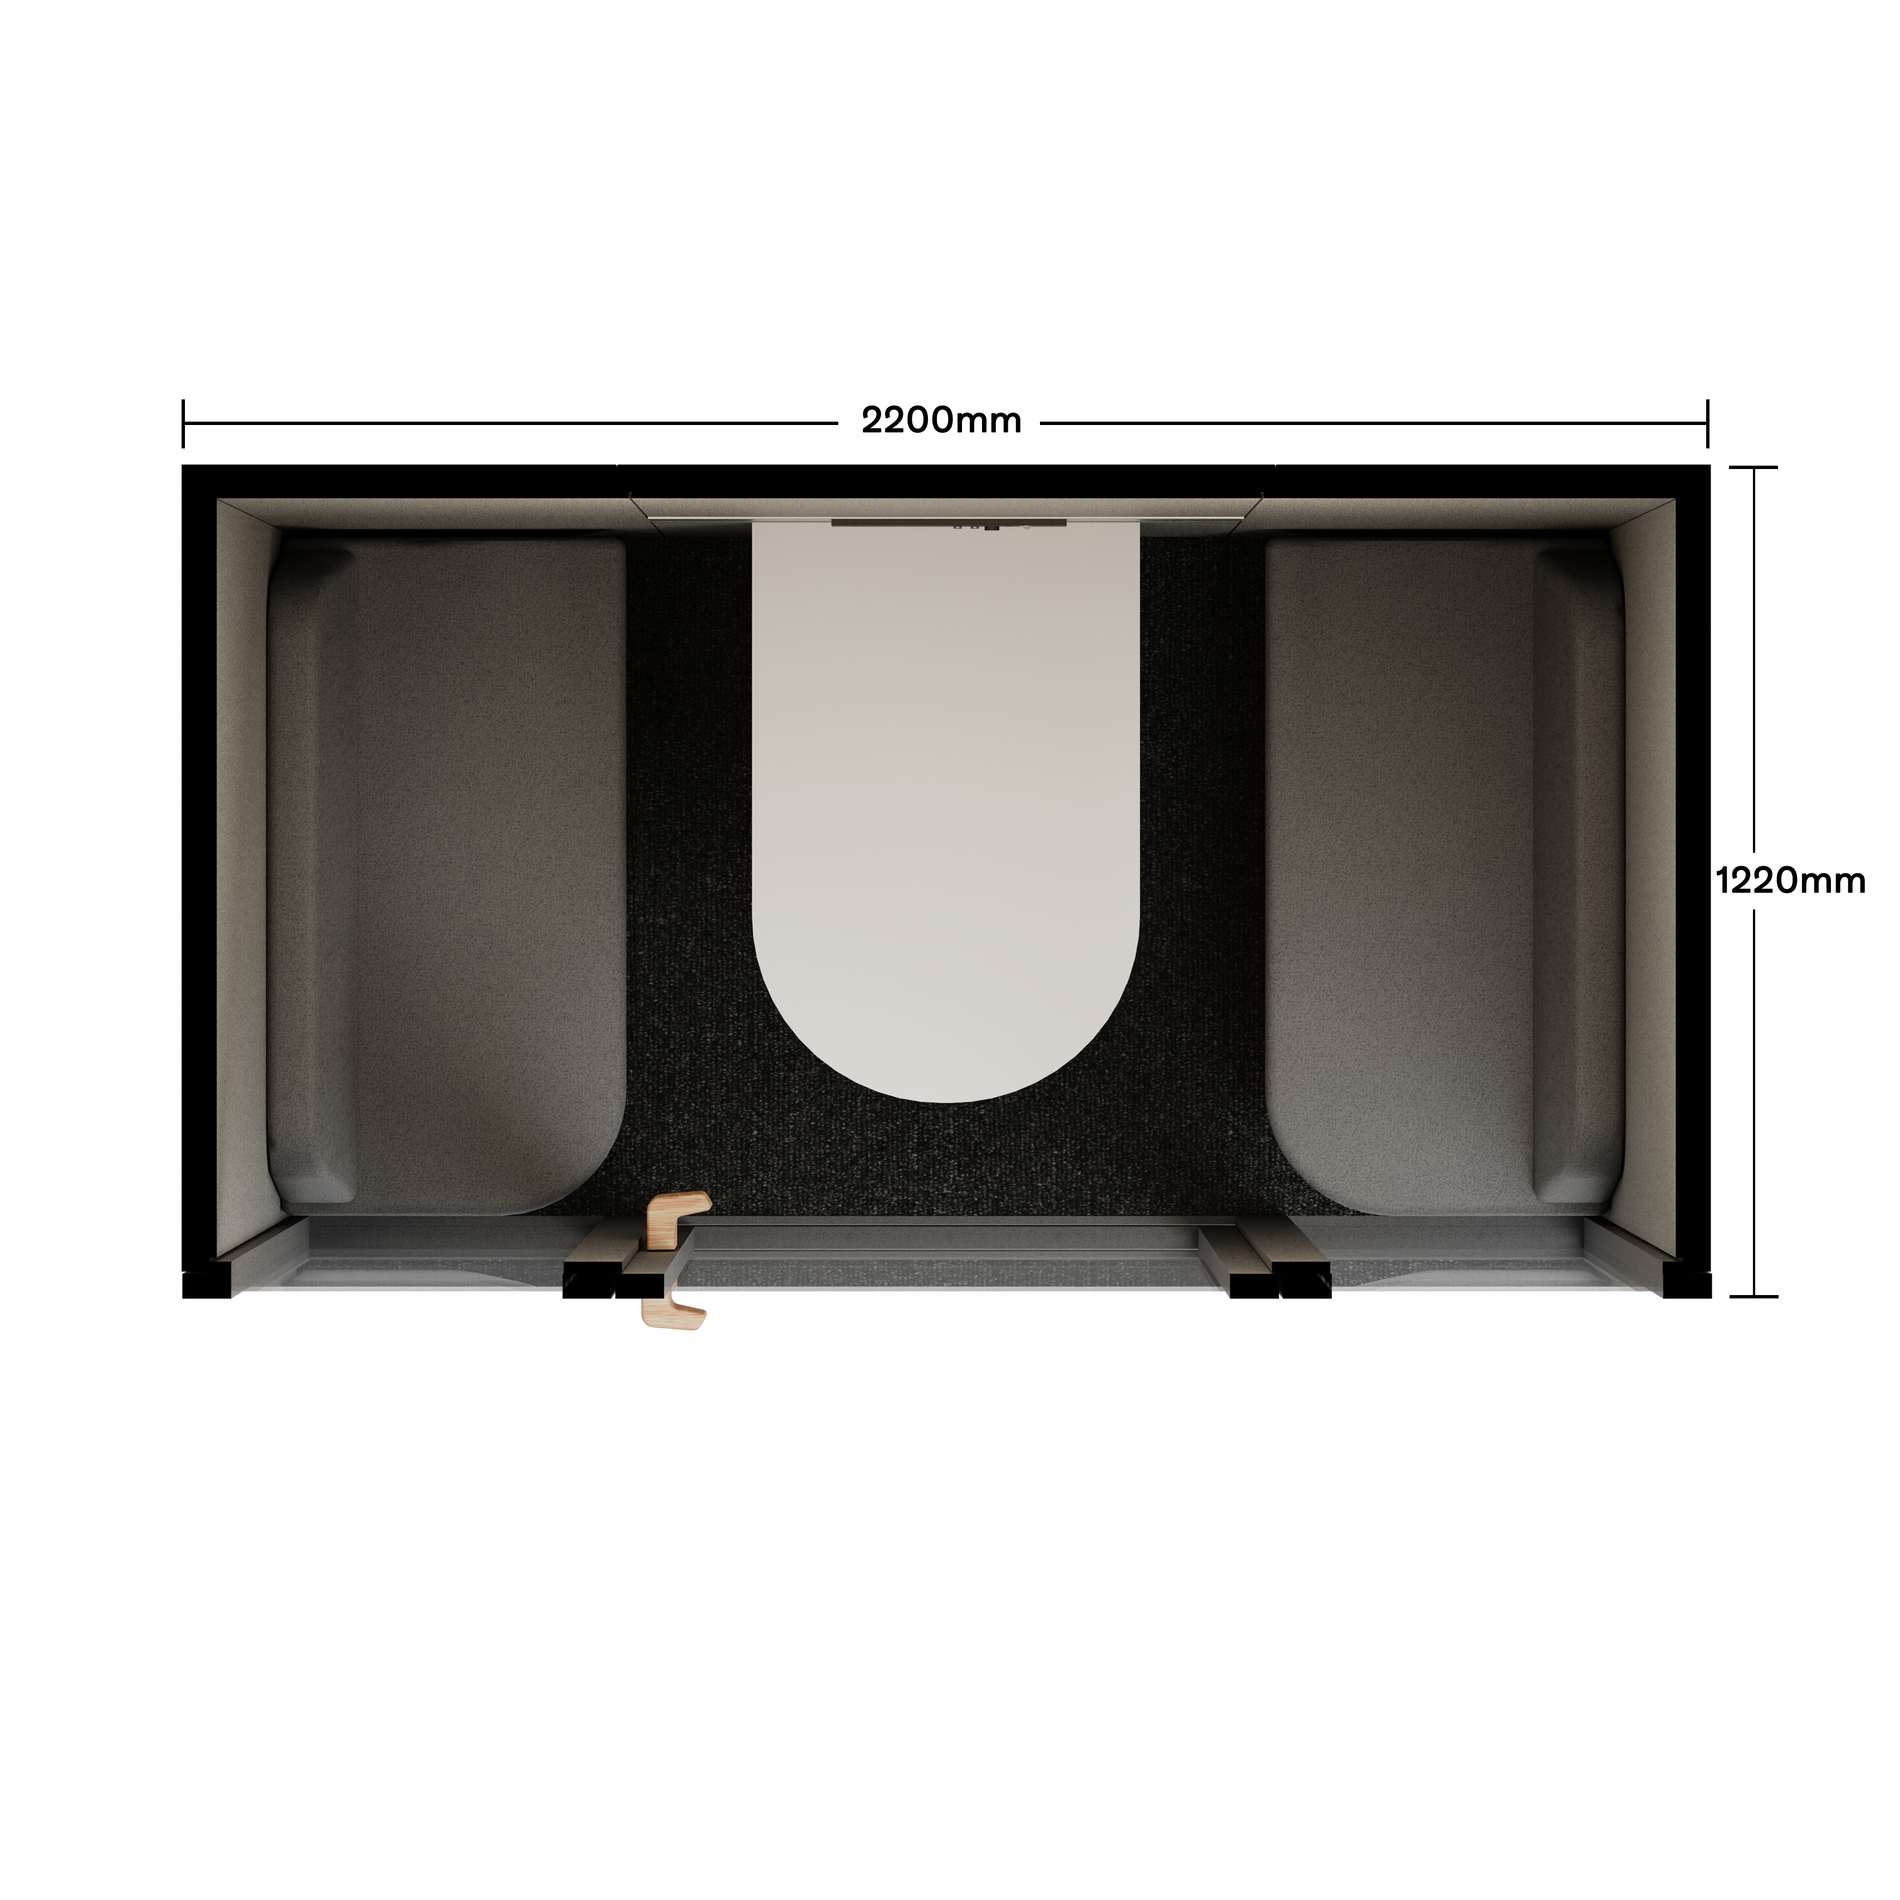 Folio Caseta de Oficina para 2-4 PersonasFolio Dark Grey / Furniture As Per Images